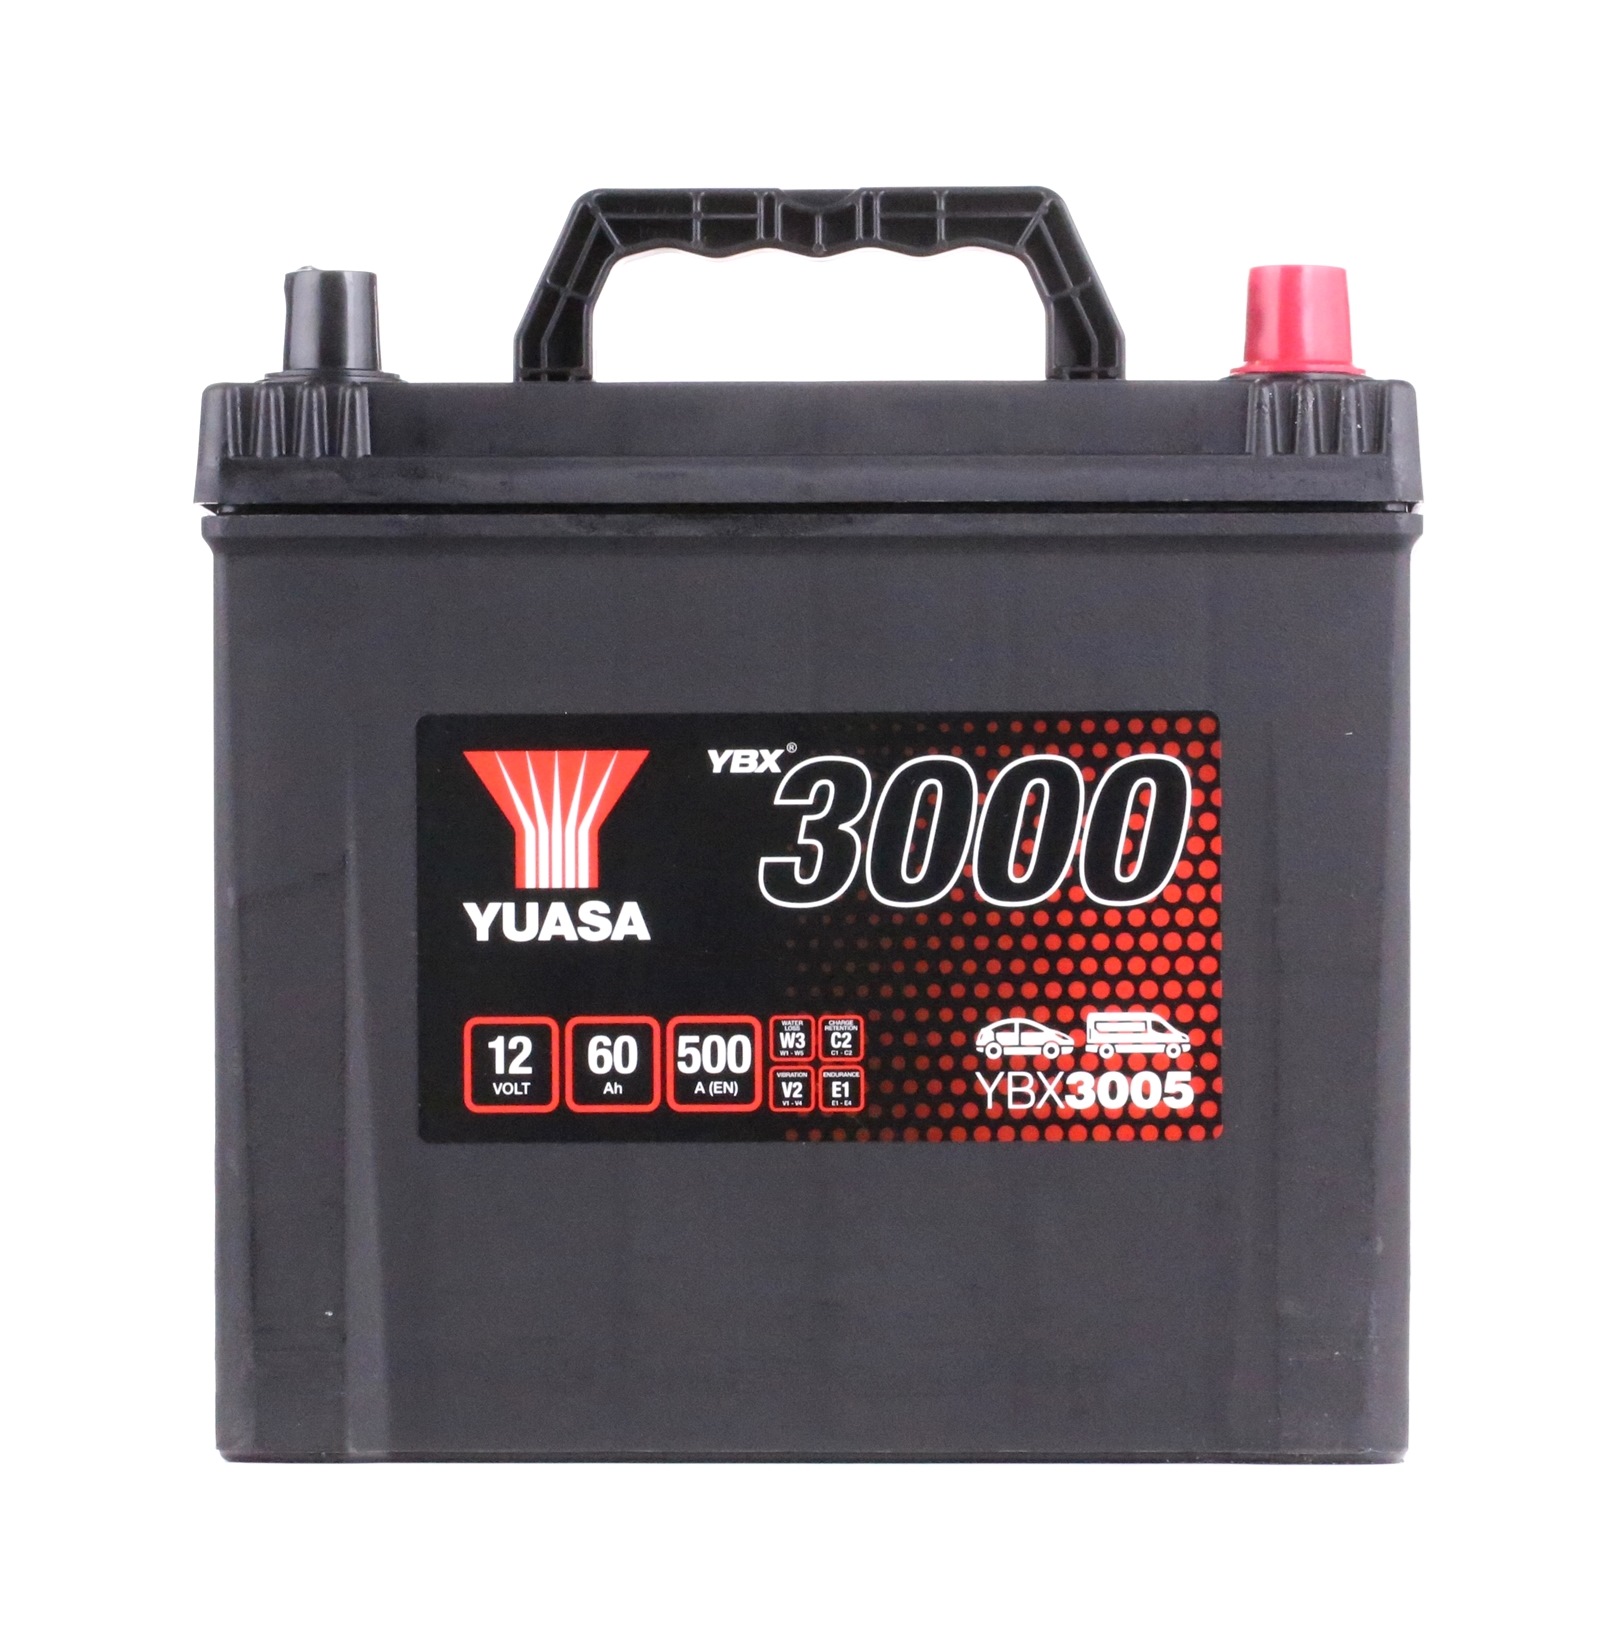 YUASA YBX3000 YBX3005 Batteria 12V 60Ah 500A con maniglie, con indicatore stato carica, Accumulatore piombo-acido